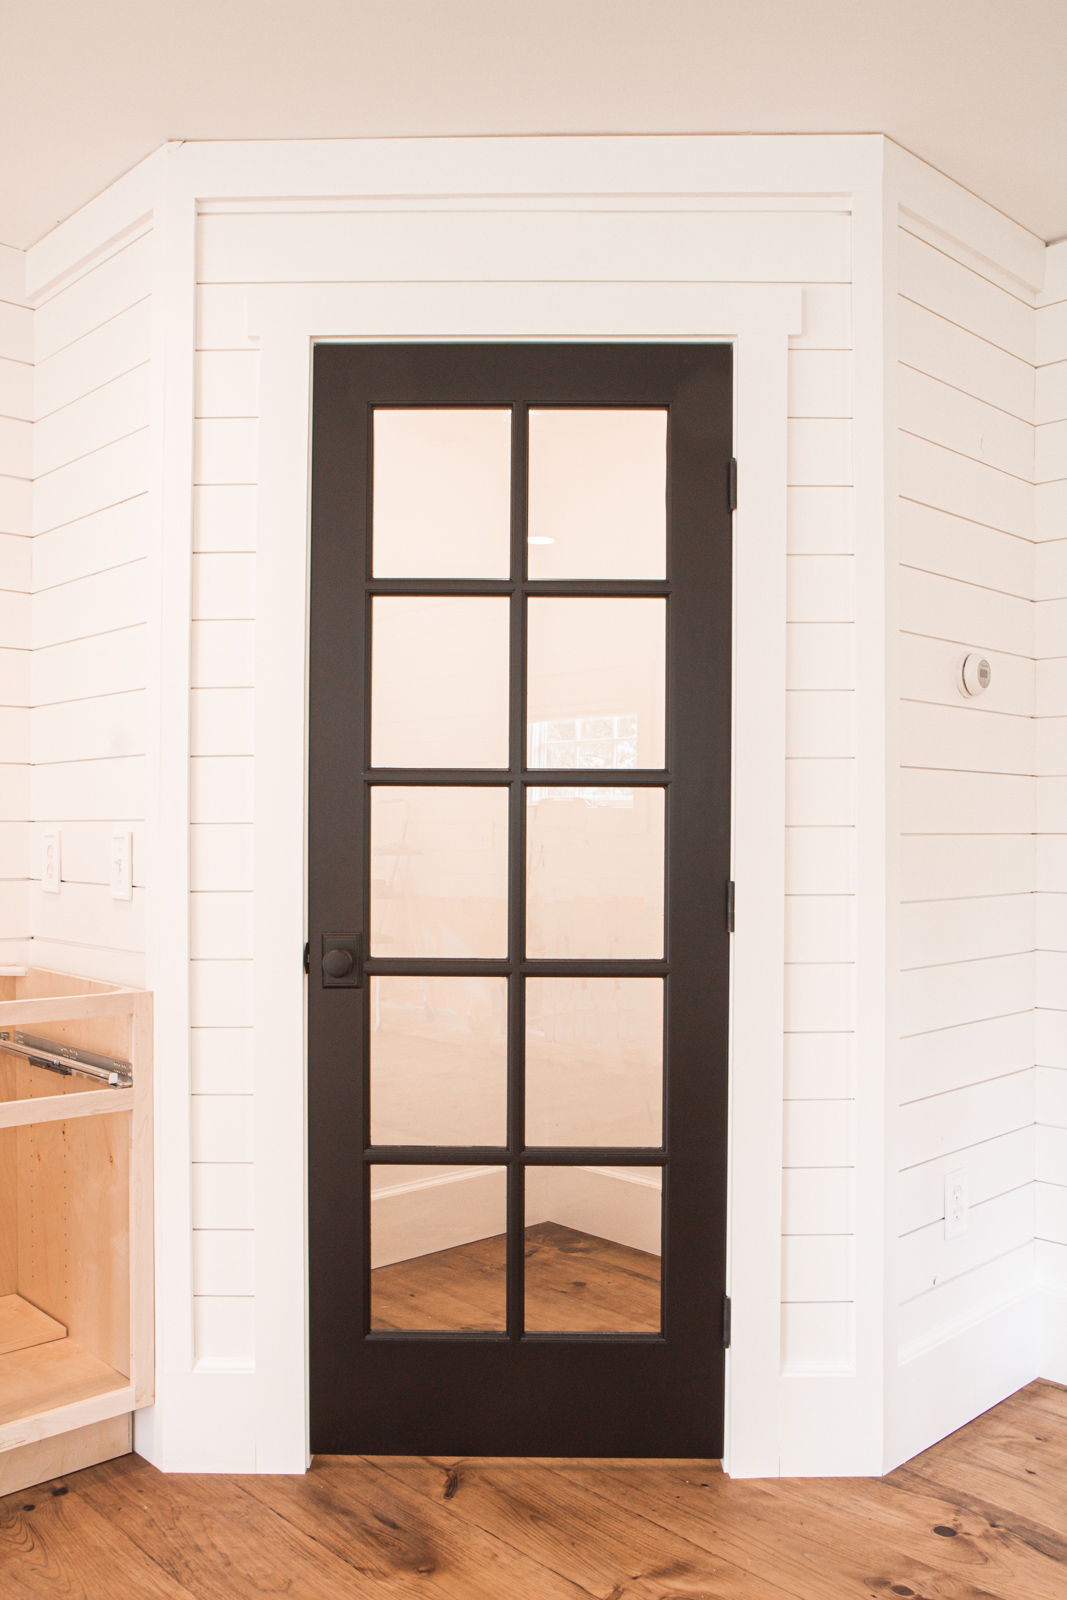 Pantry with black glass door